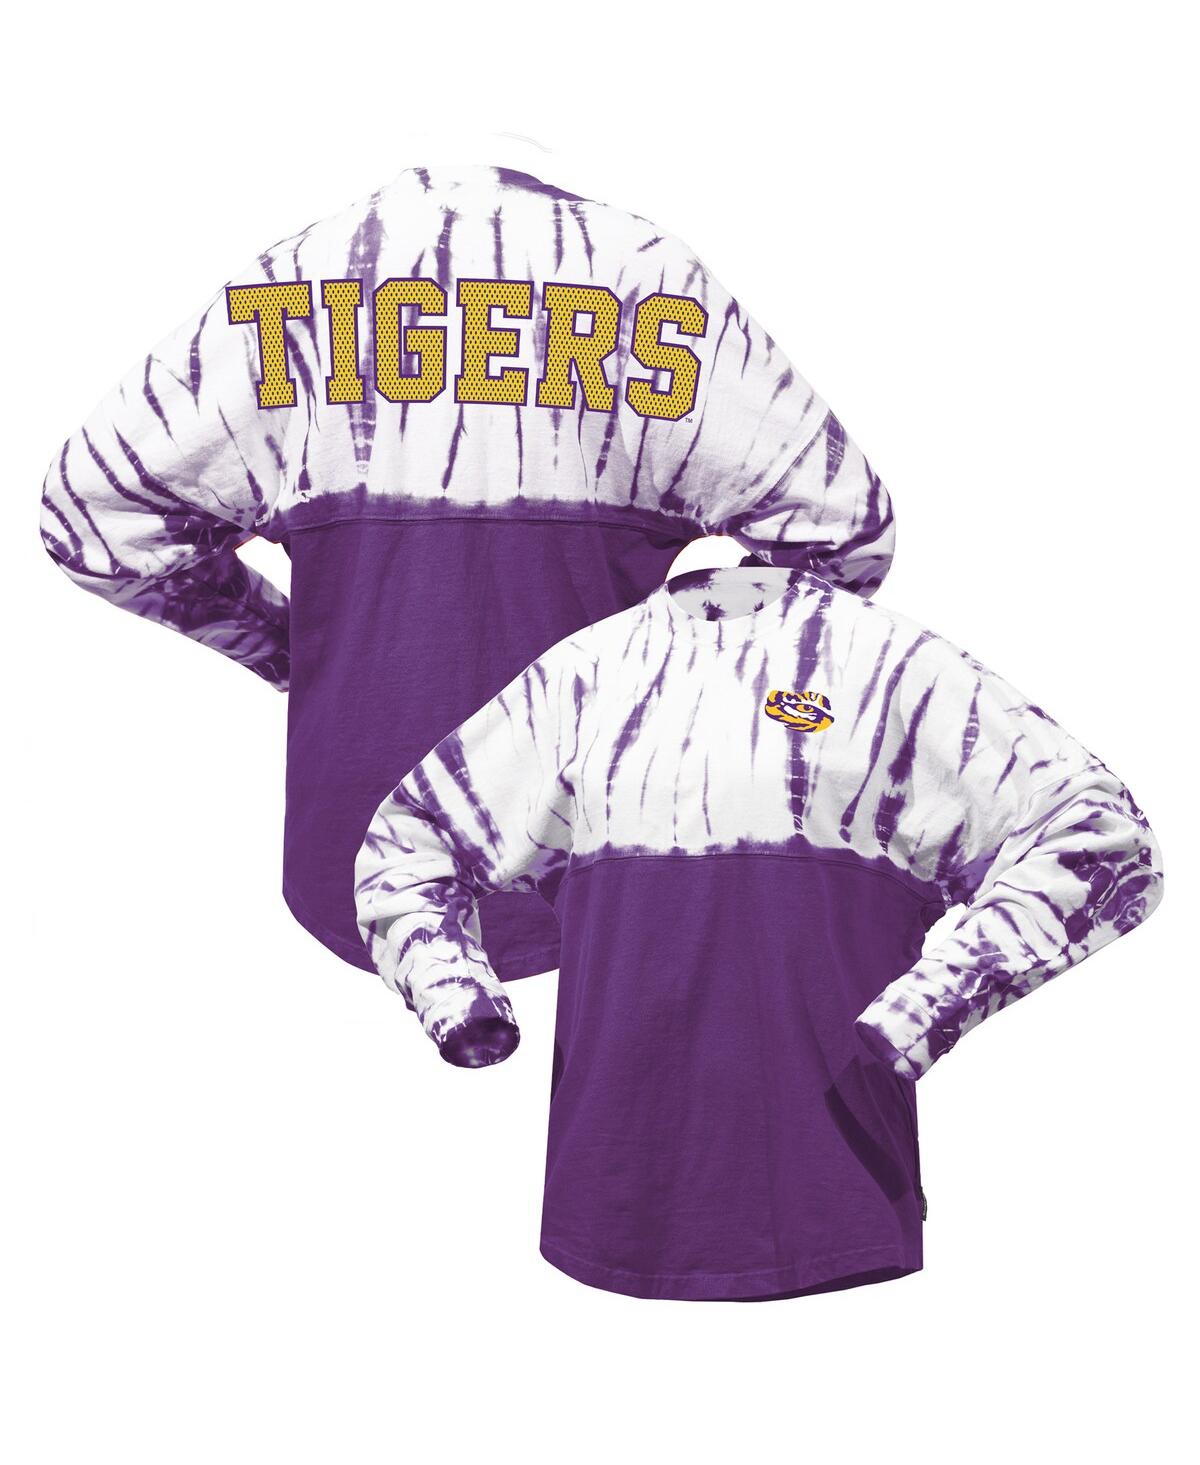 Spirit Jersey Women's Purple Lsu Tigers Tie-dye Long Sleeve Jersey T-shirt